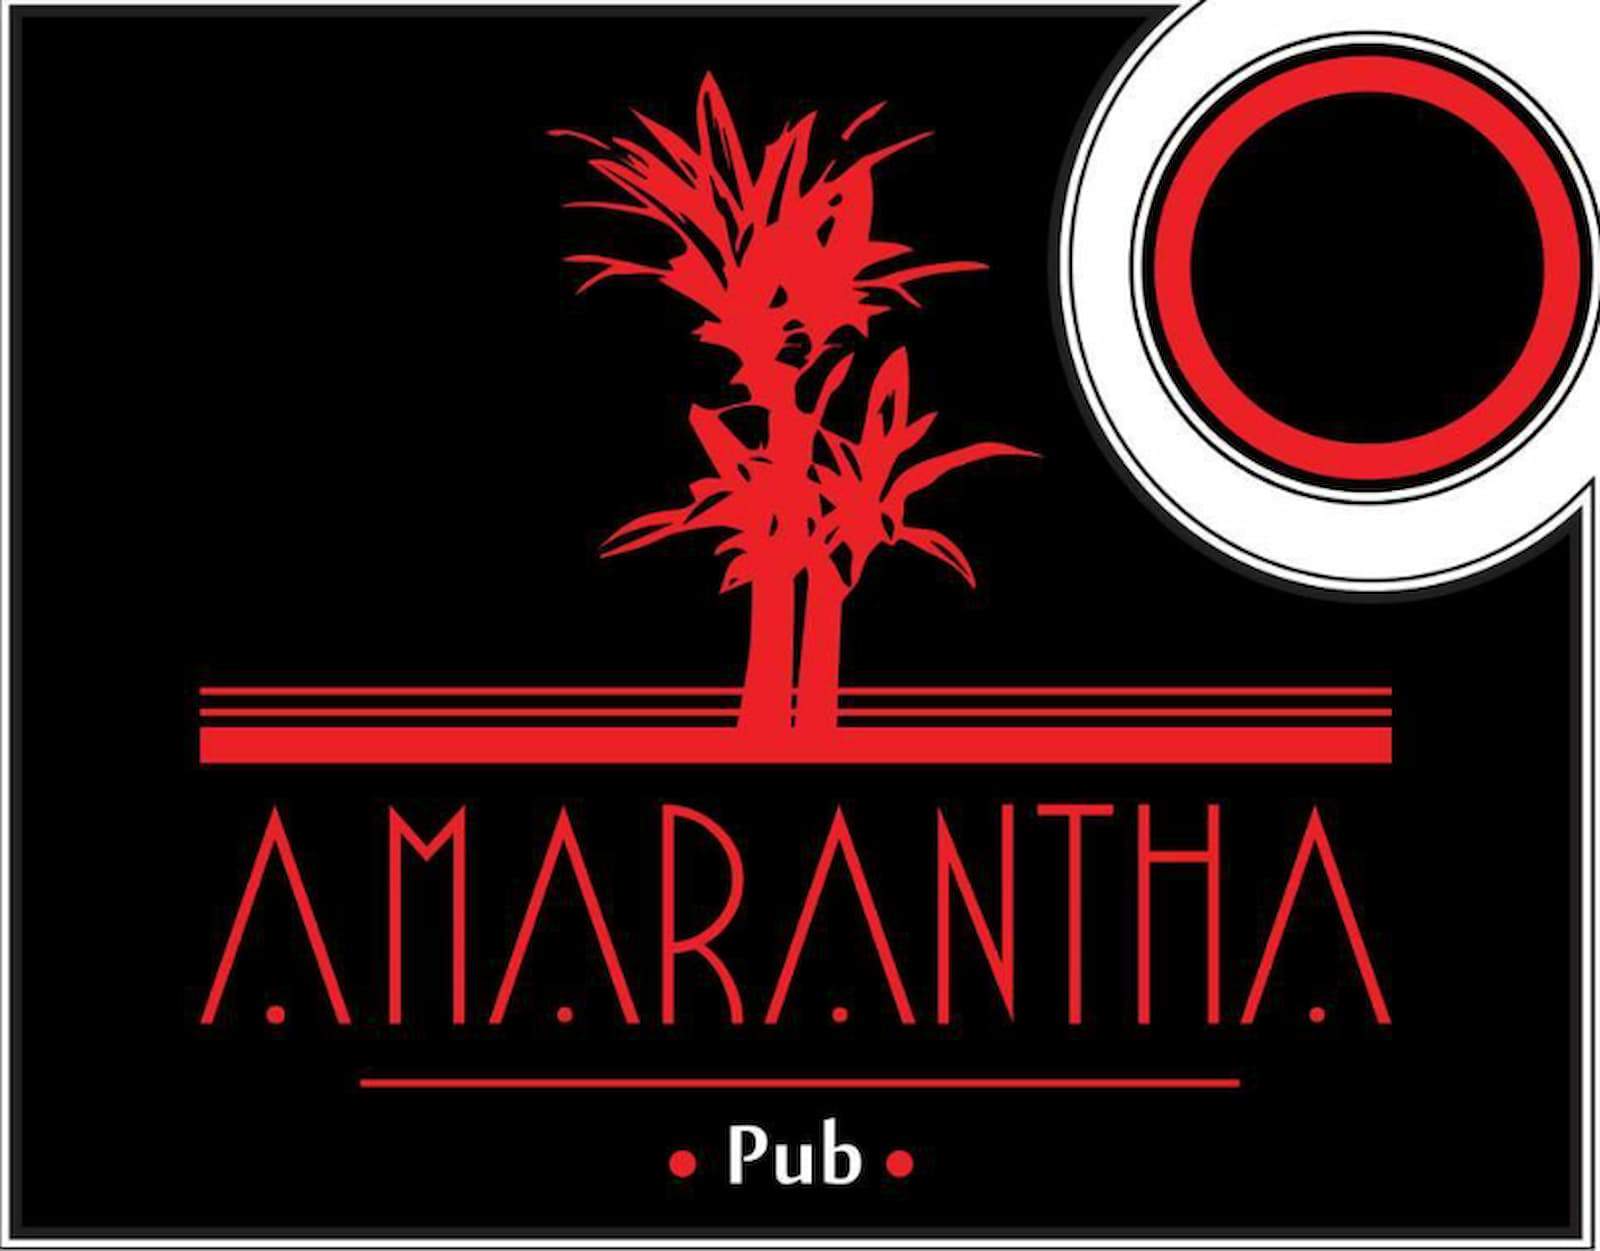 Amarantha Pub